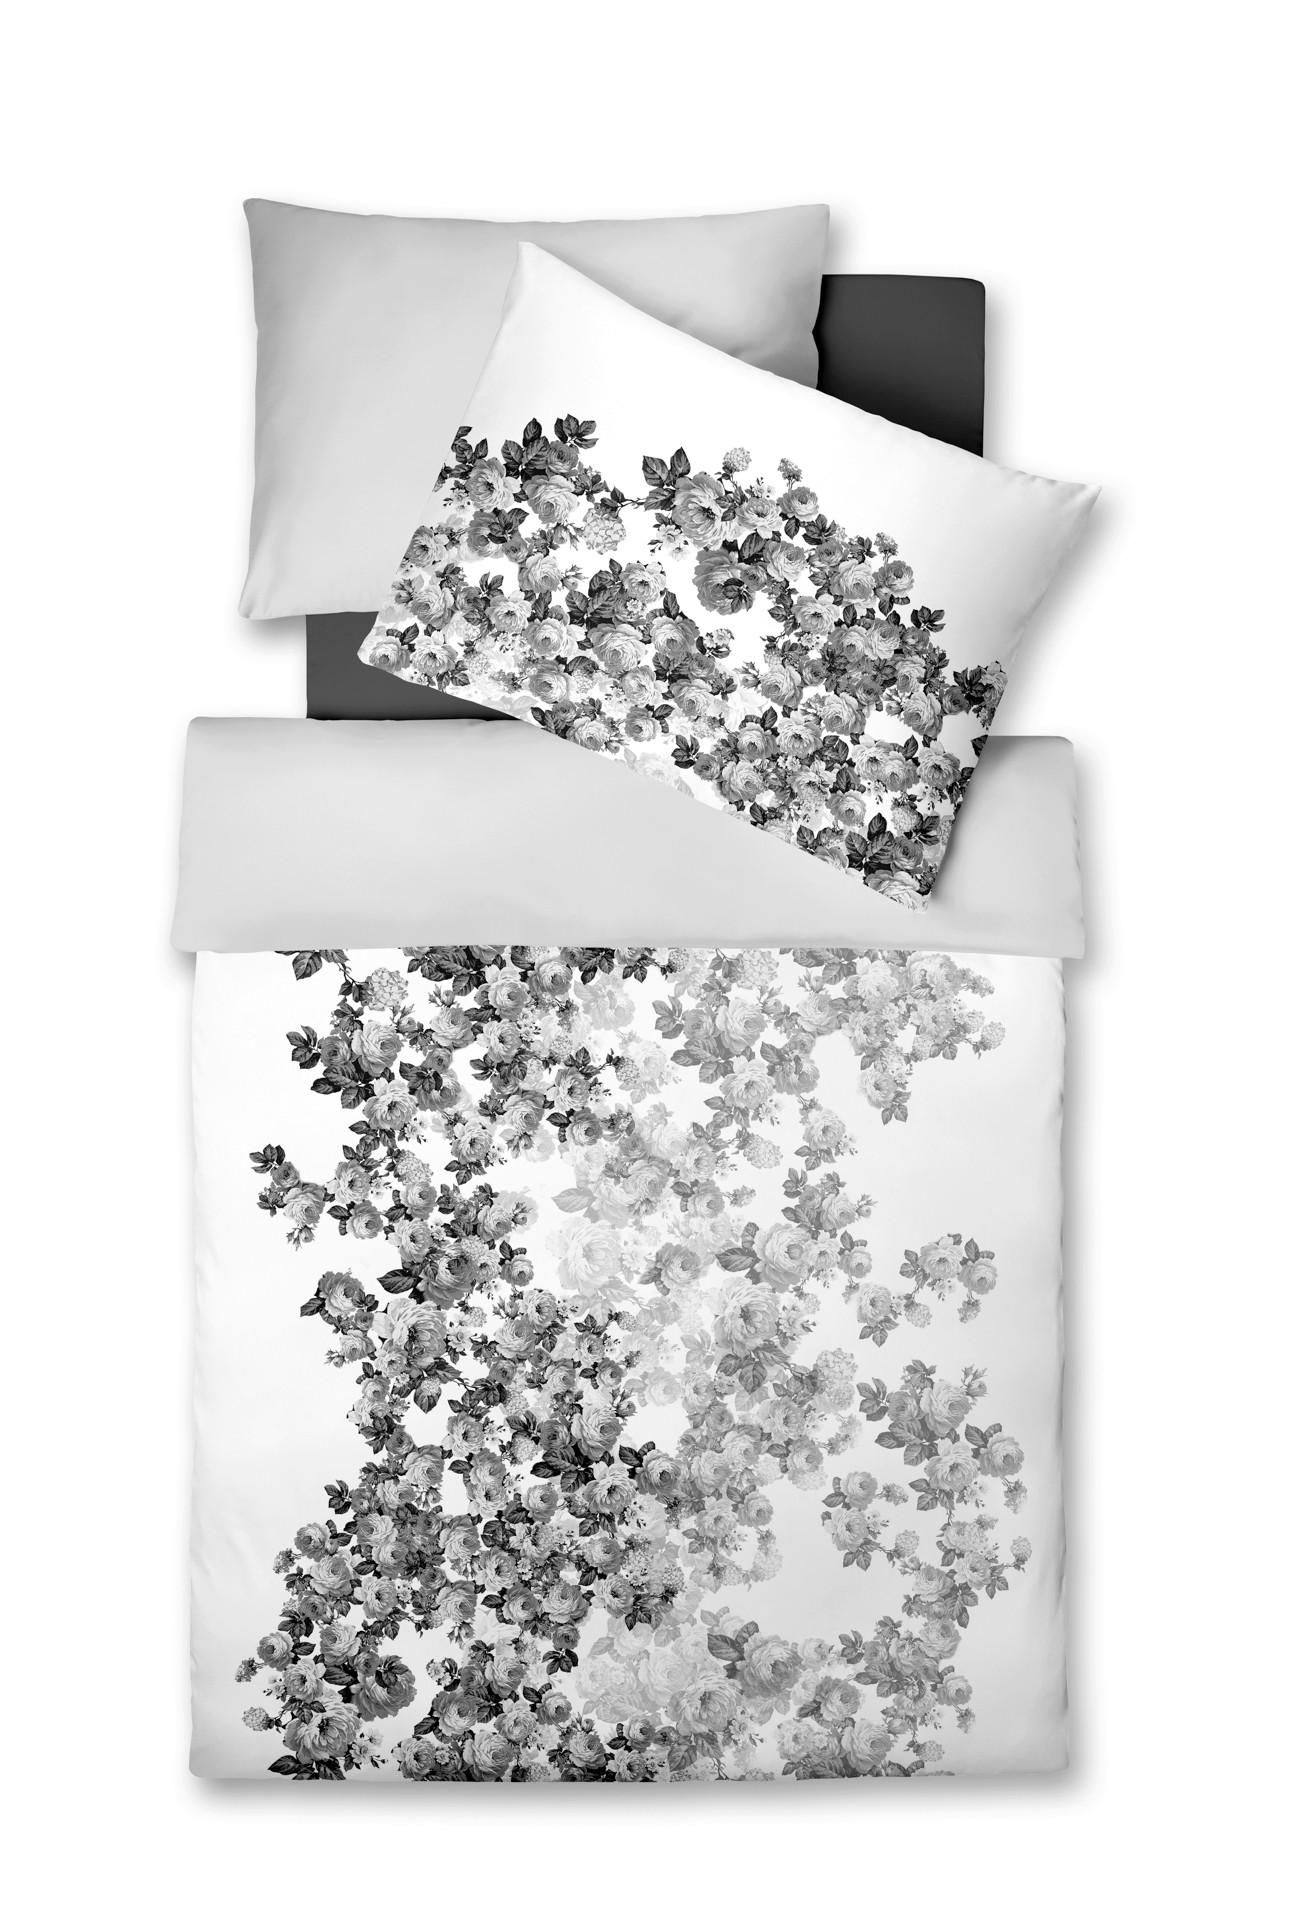 Fleuresse POSTEĽNÁ BIELIZEŇ, makosatén, čierna, biela, 140/200 cm - čierna, biela